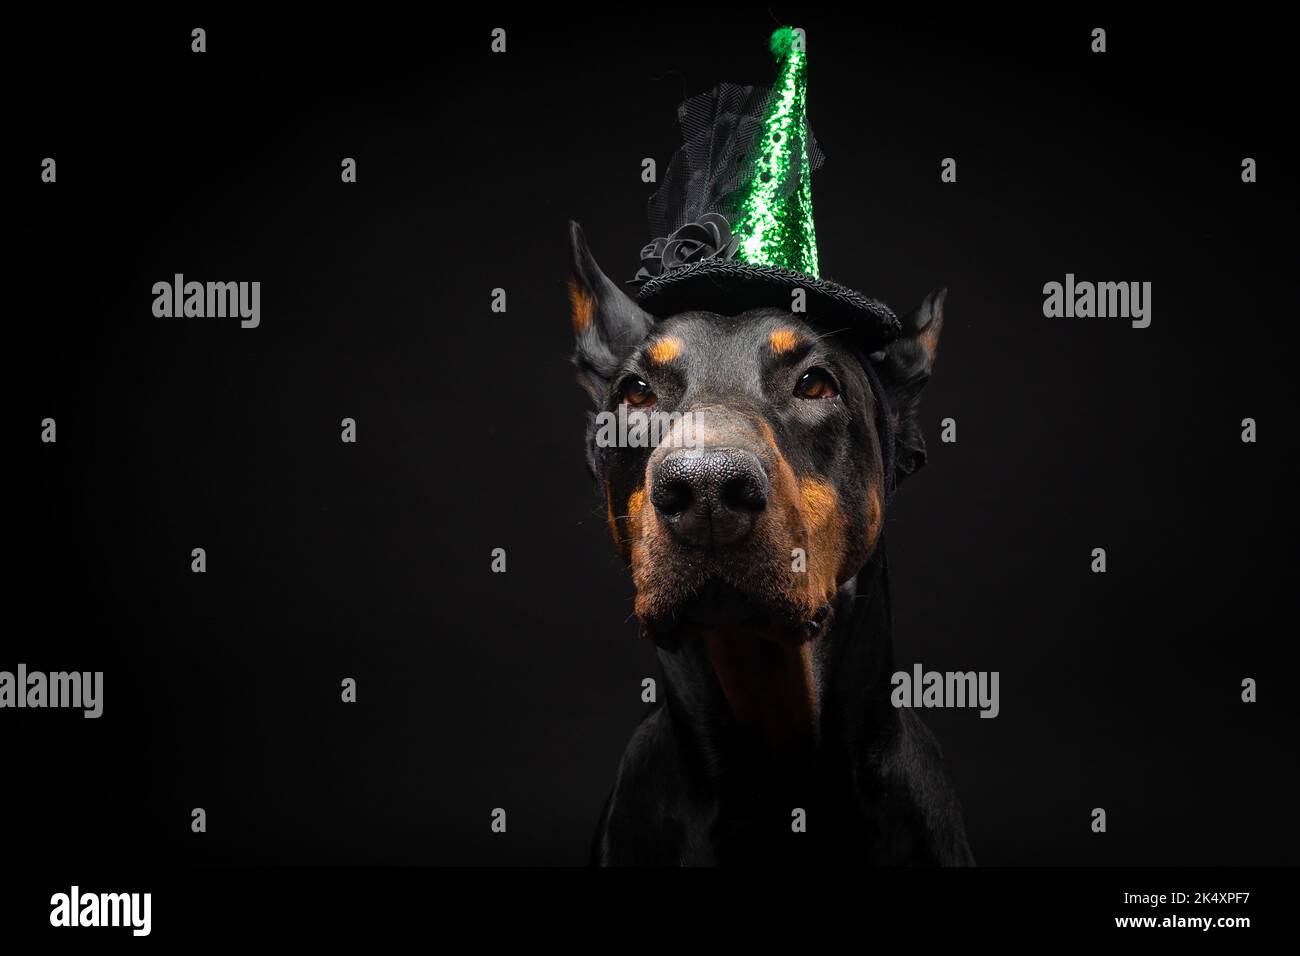 Copricapo di halloween immagini e fotografie stock ad alta risoluzione -  Alamy